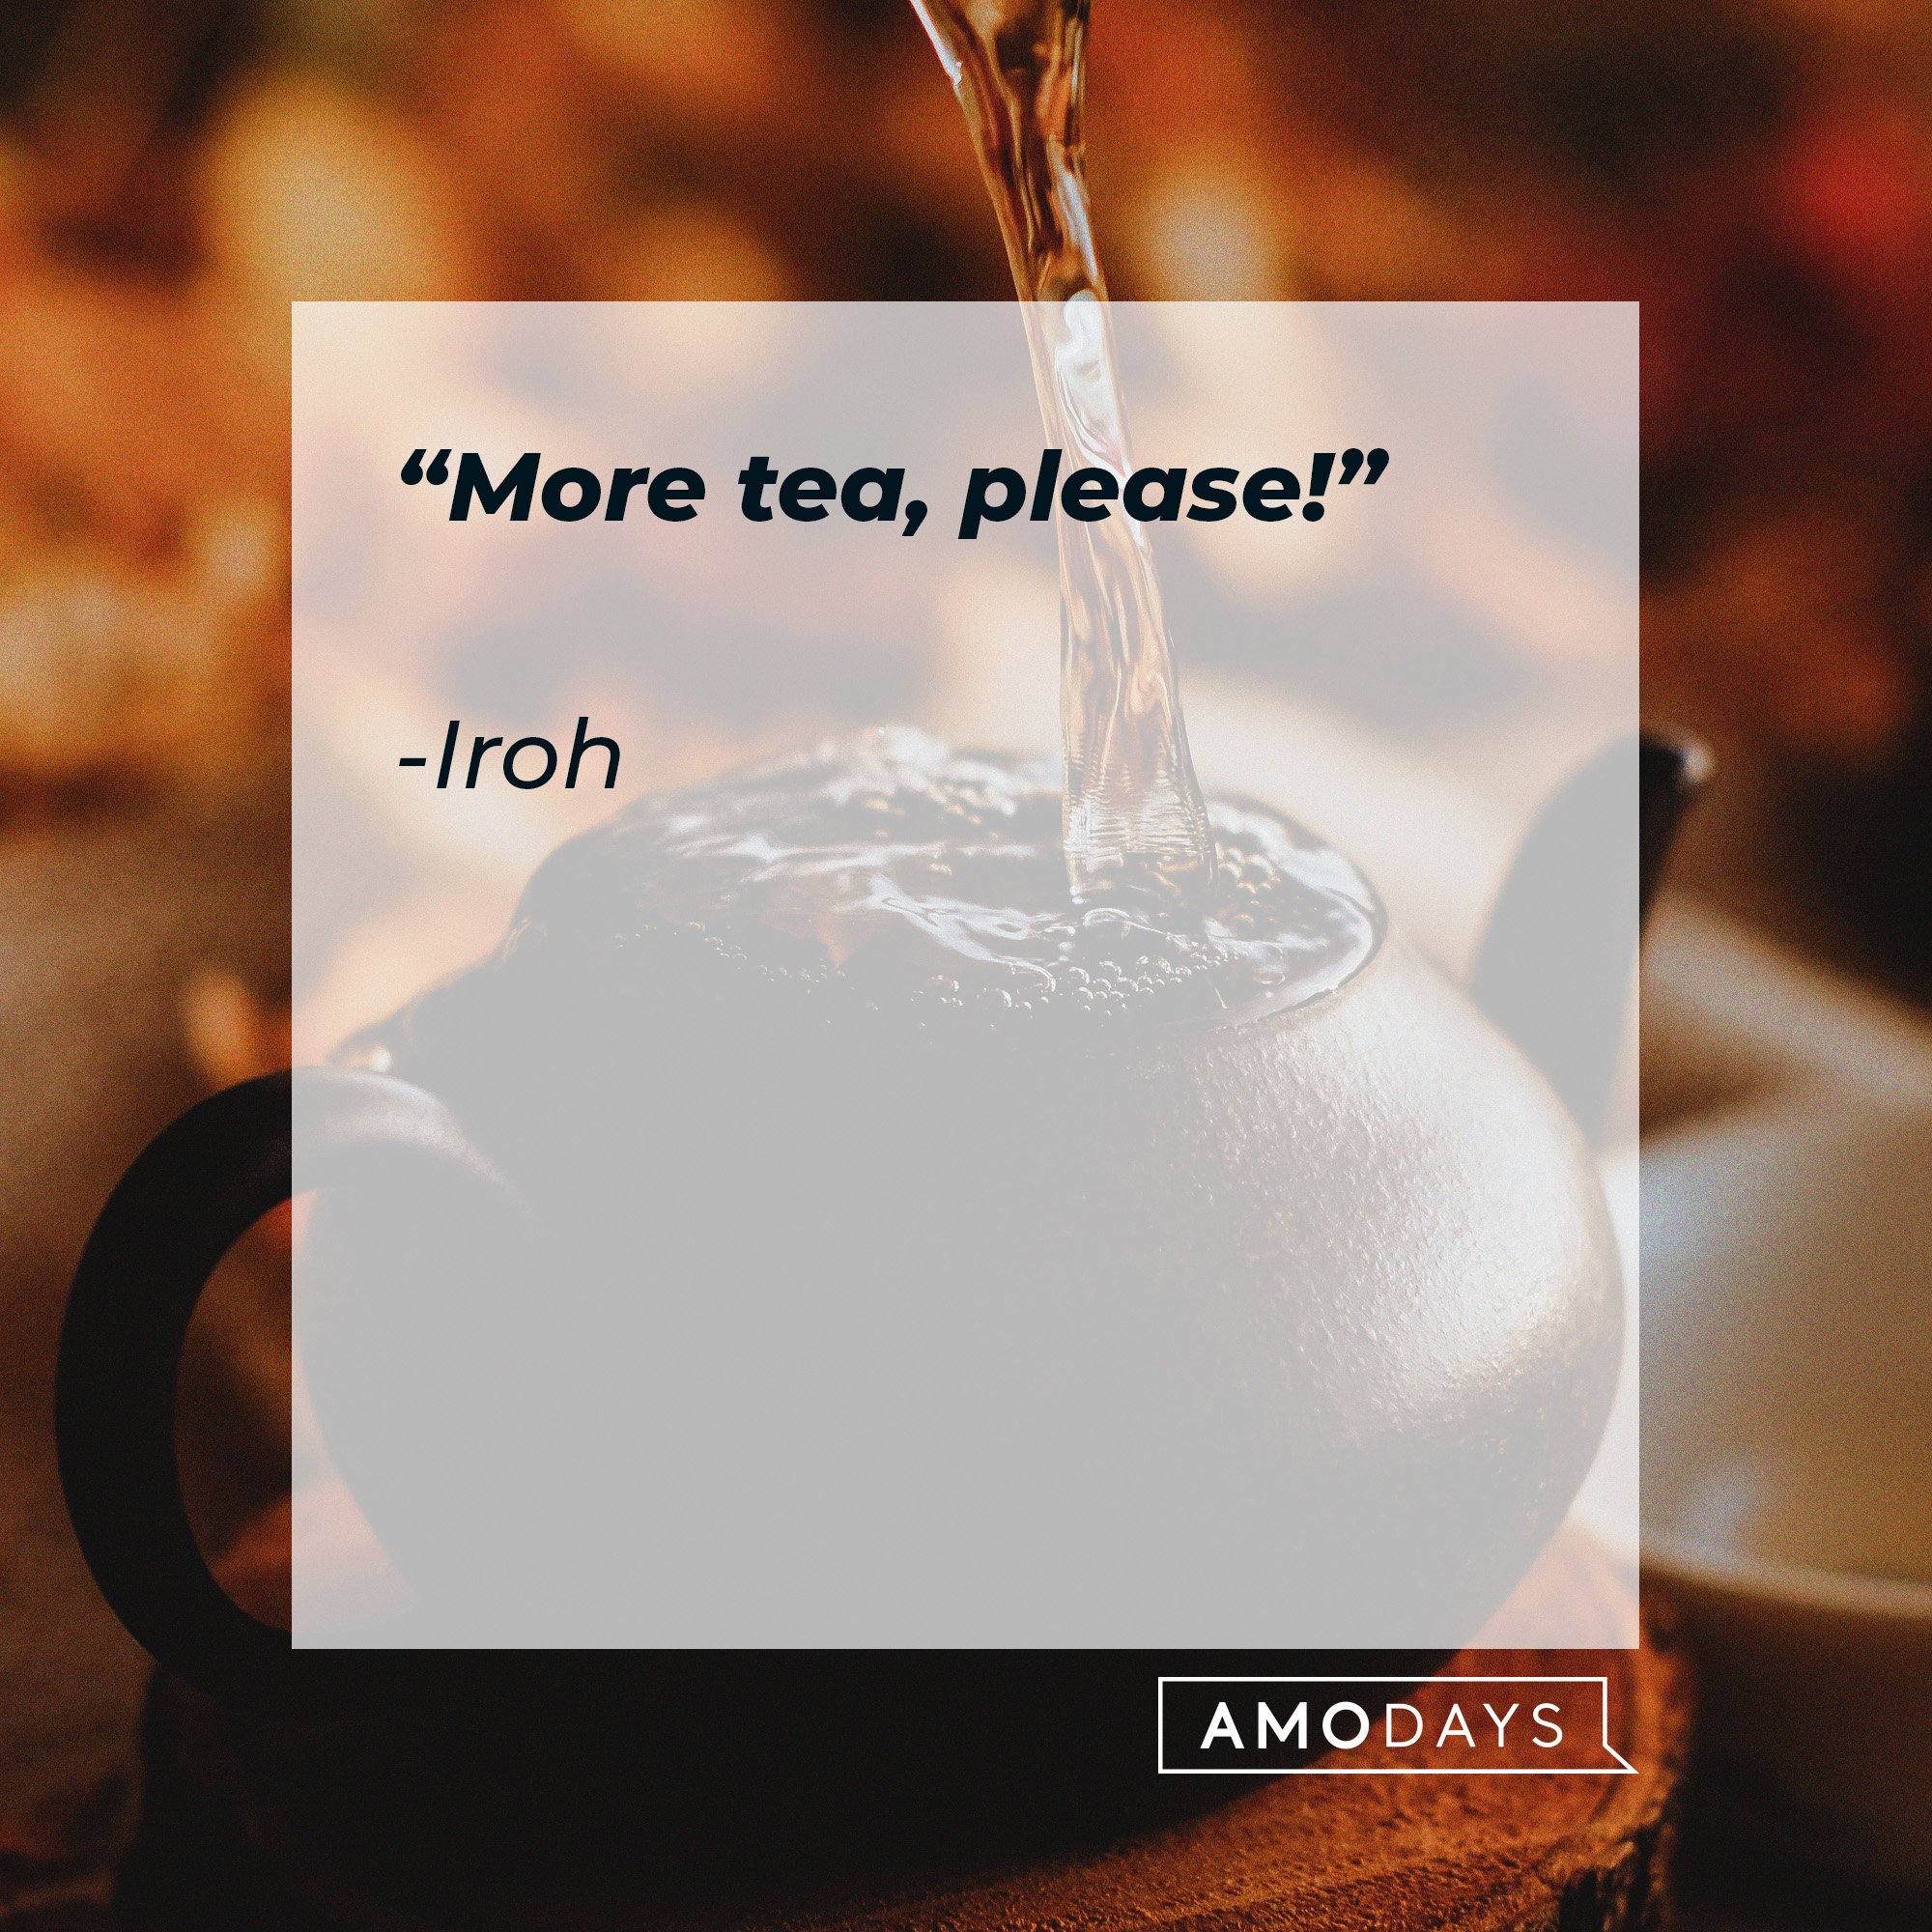 Iroh's quote: “More tea, please!” | Image: AmoDays